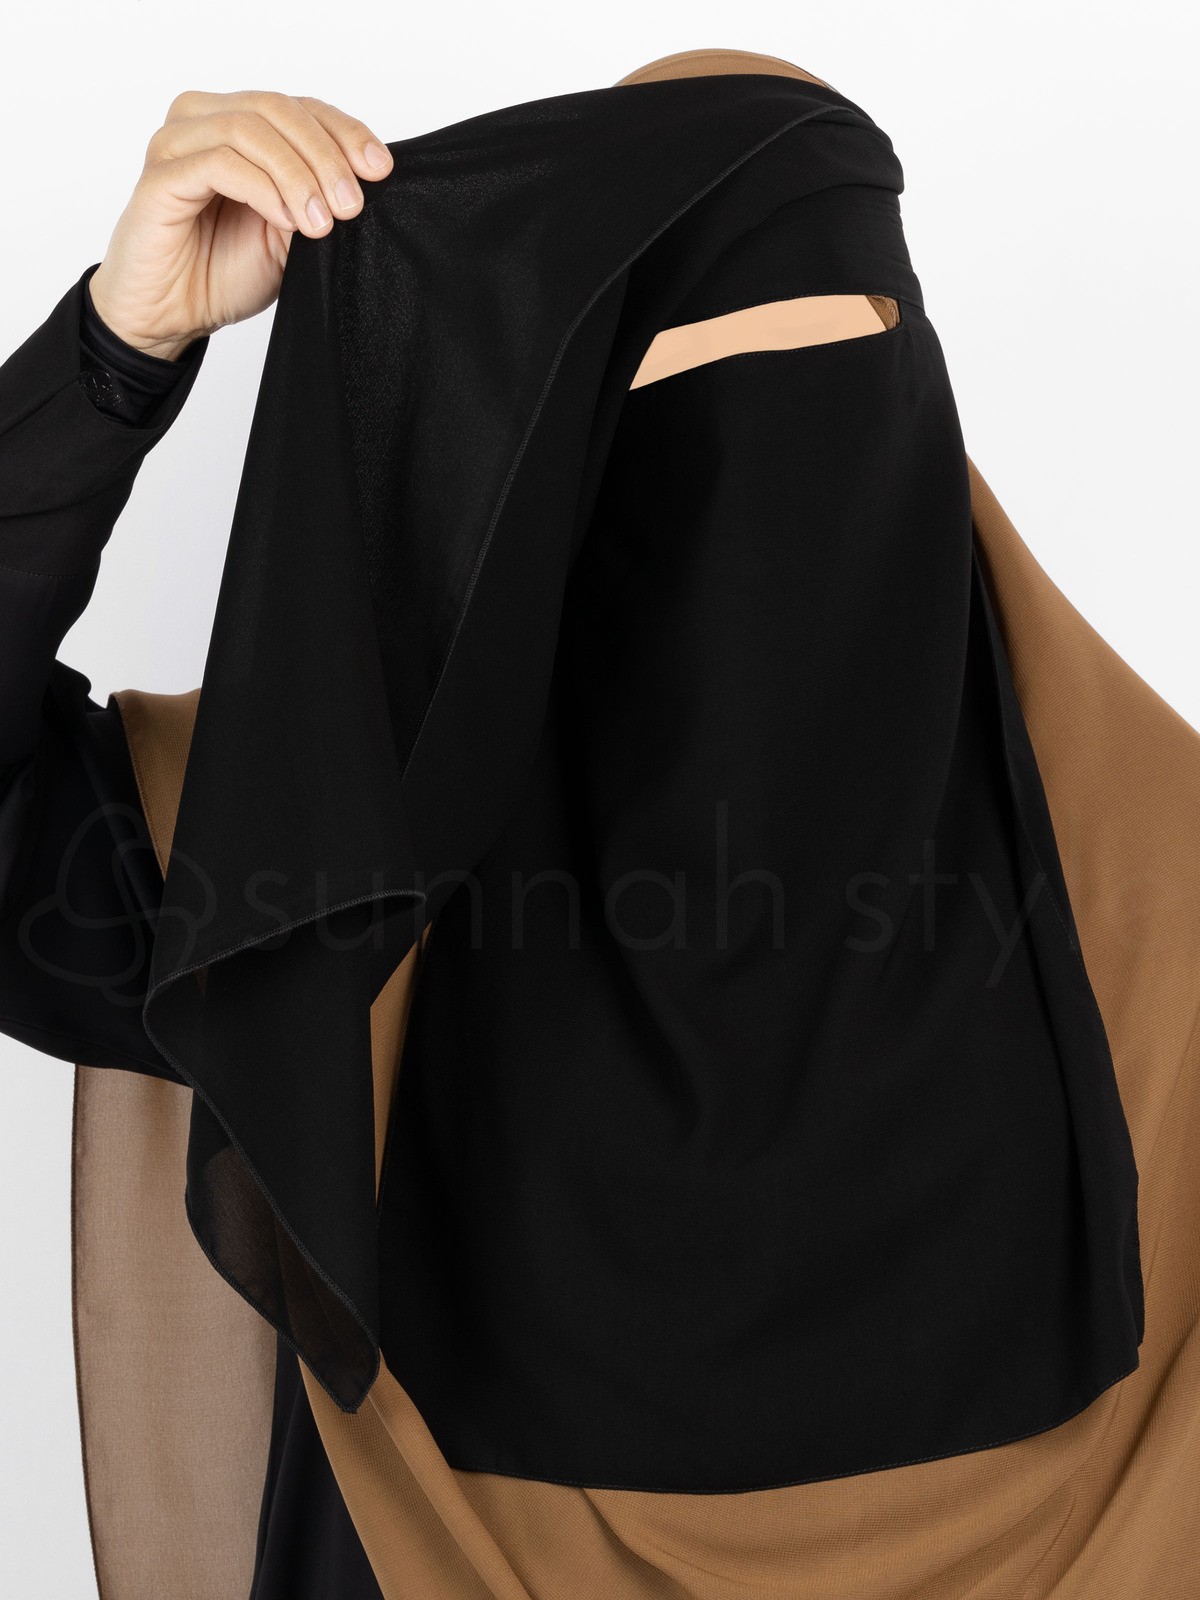 Sunnah Style - Narrow No-Pinch Two Layer Niqab (Black)